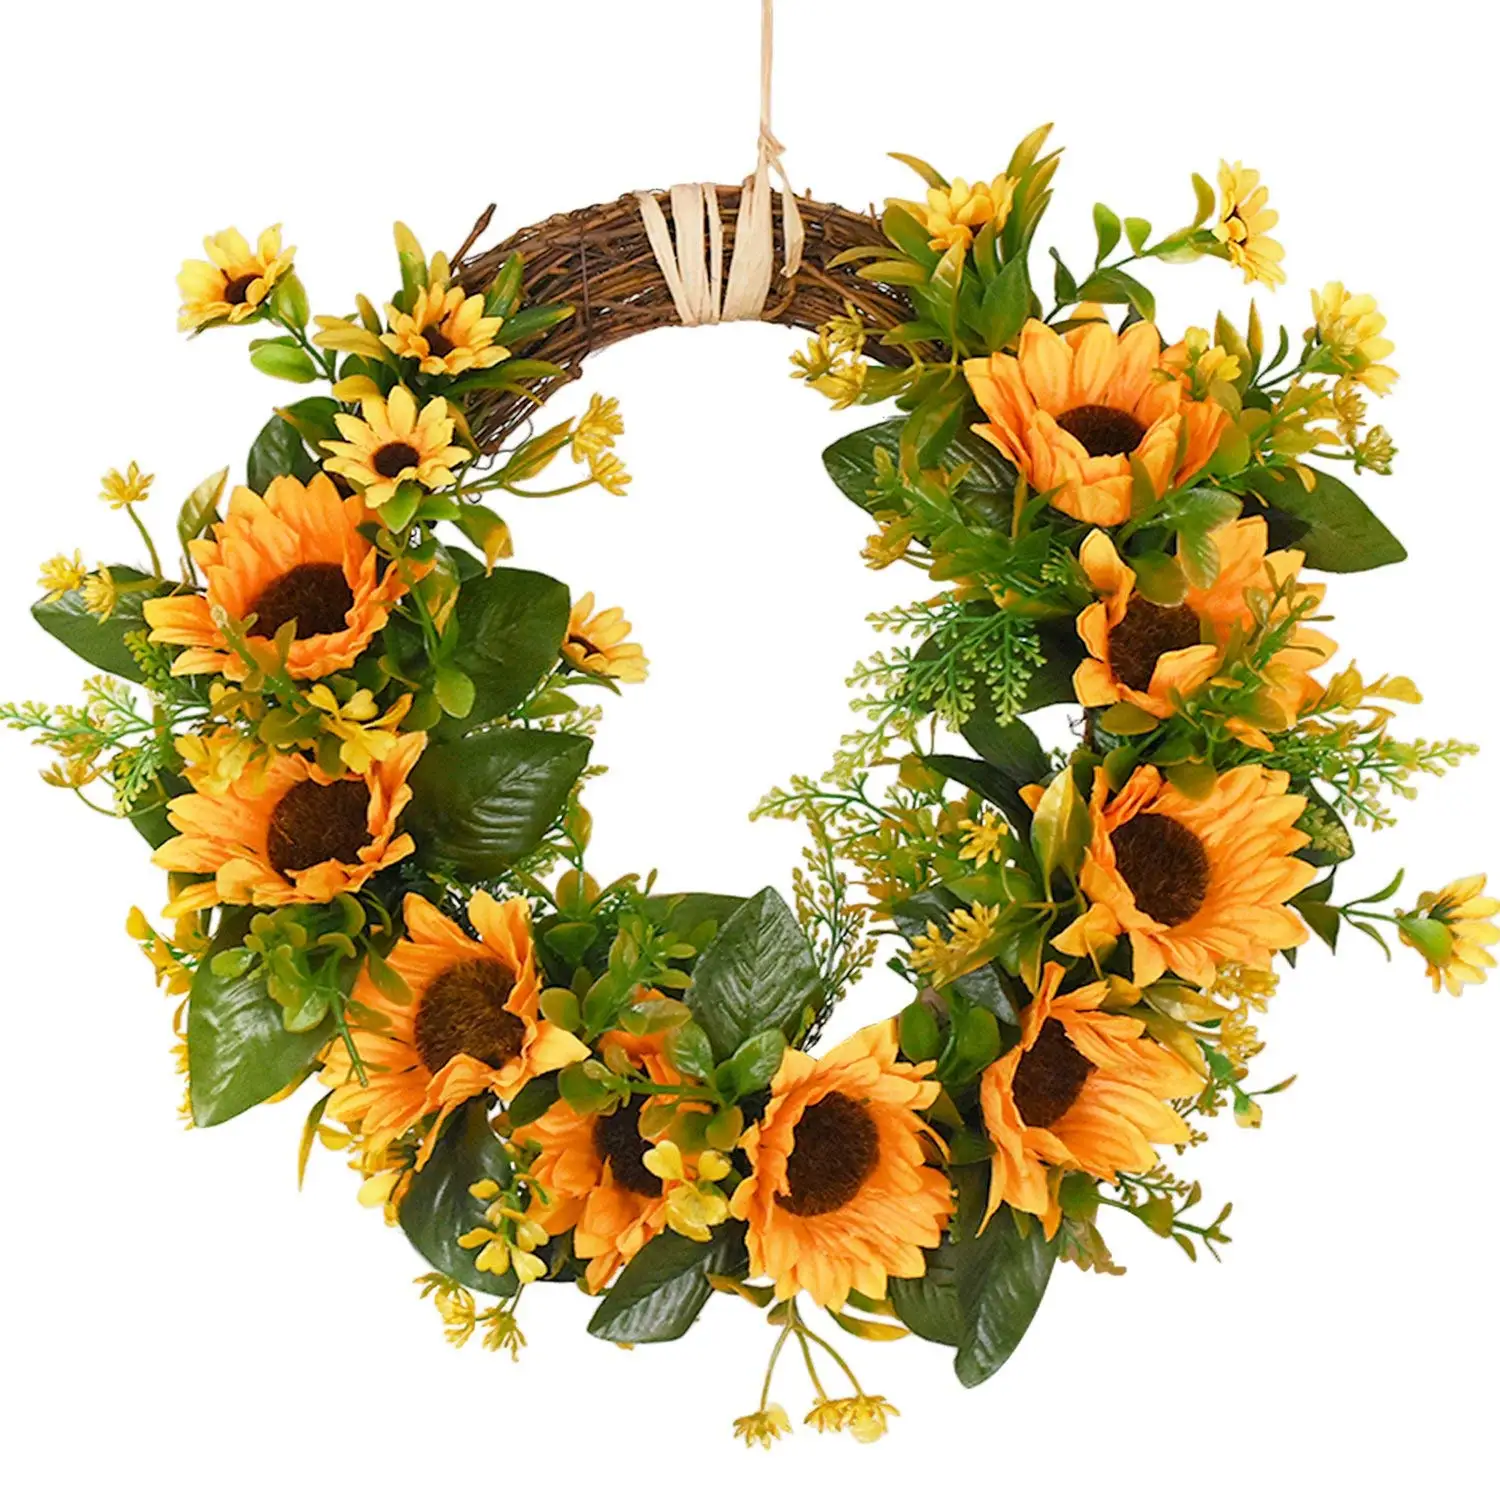 Искусственный венок из подсолнухов, цветочный венок с желтым подсолнухом и зелеными листьями для входной двери, внутренней или наружной стены, свадьбы